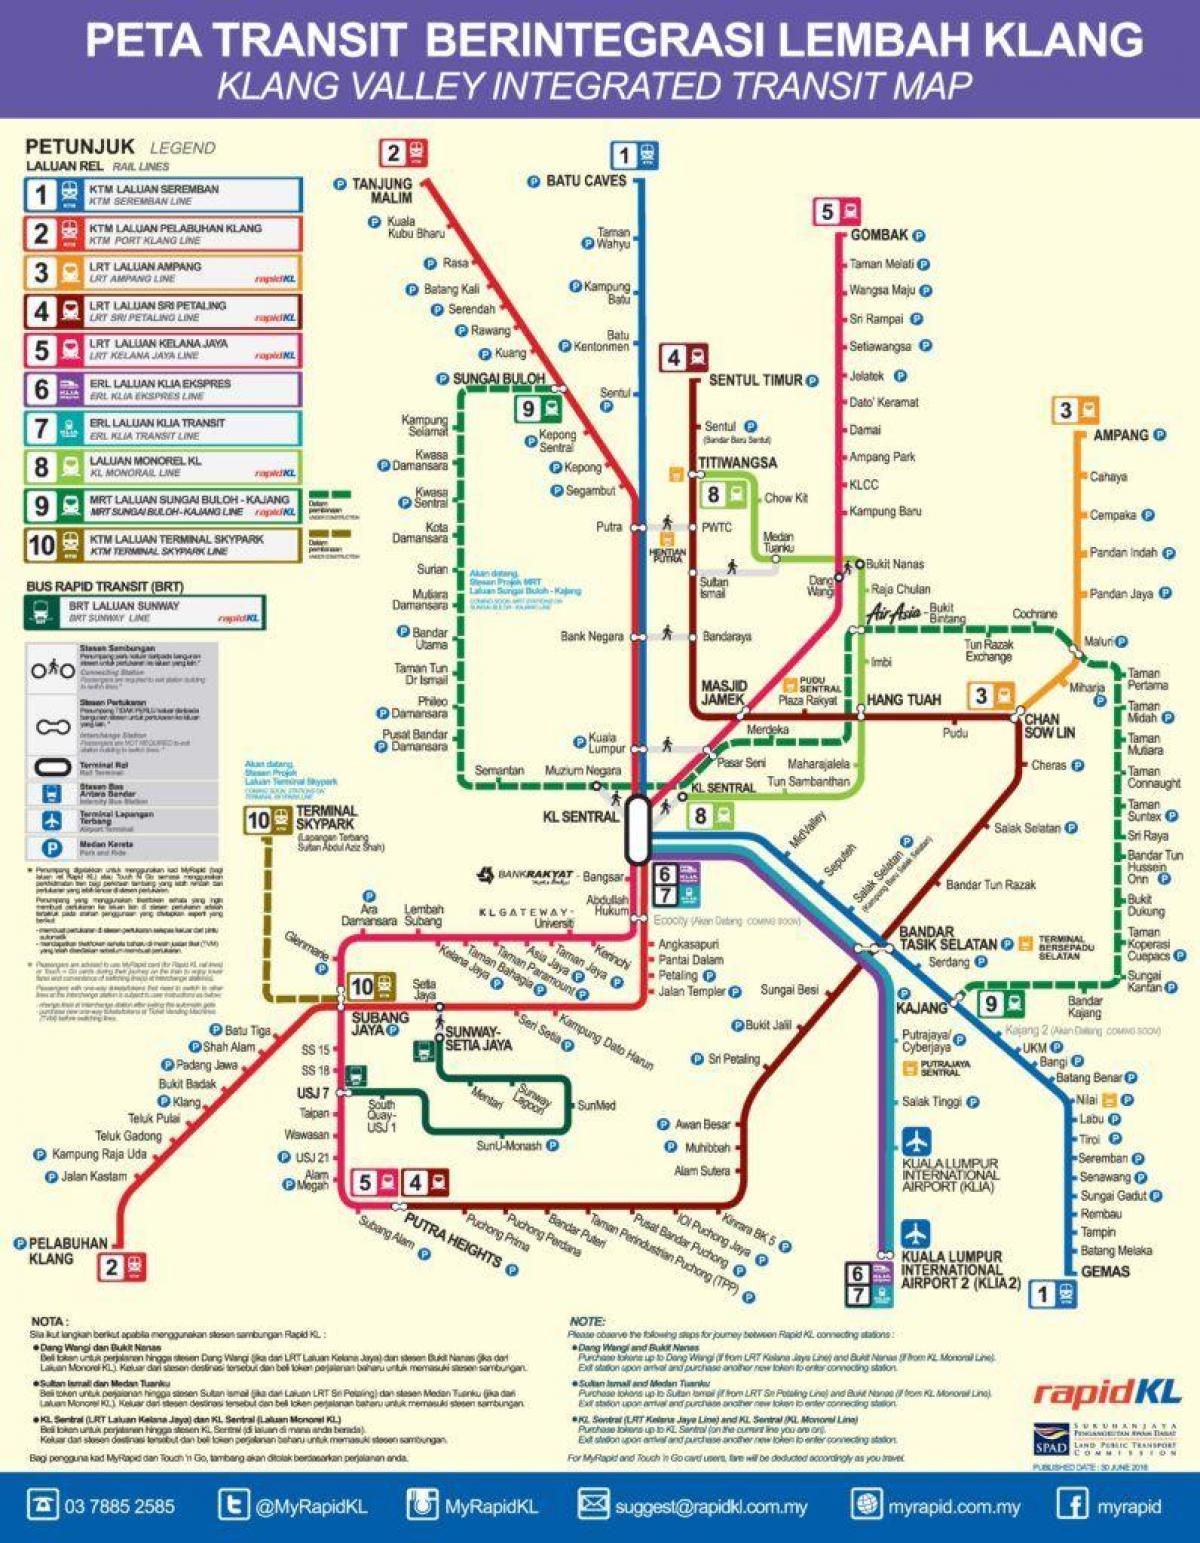 Кланг долині залізничний транзит карті